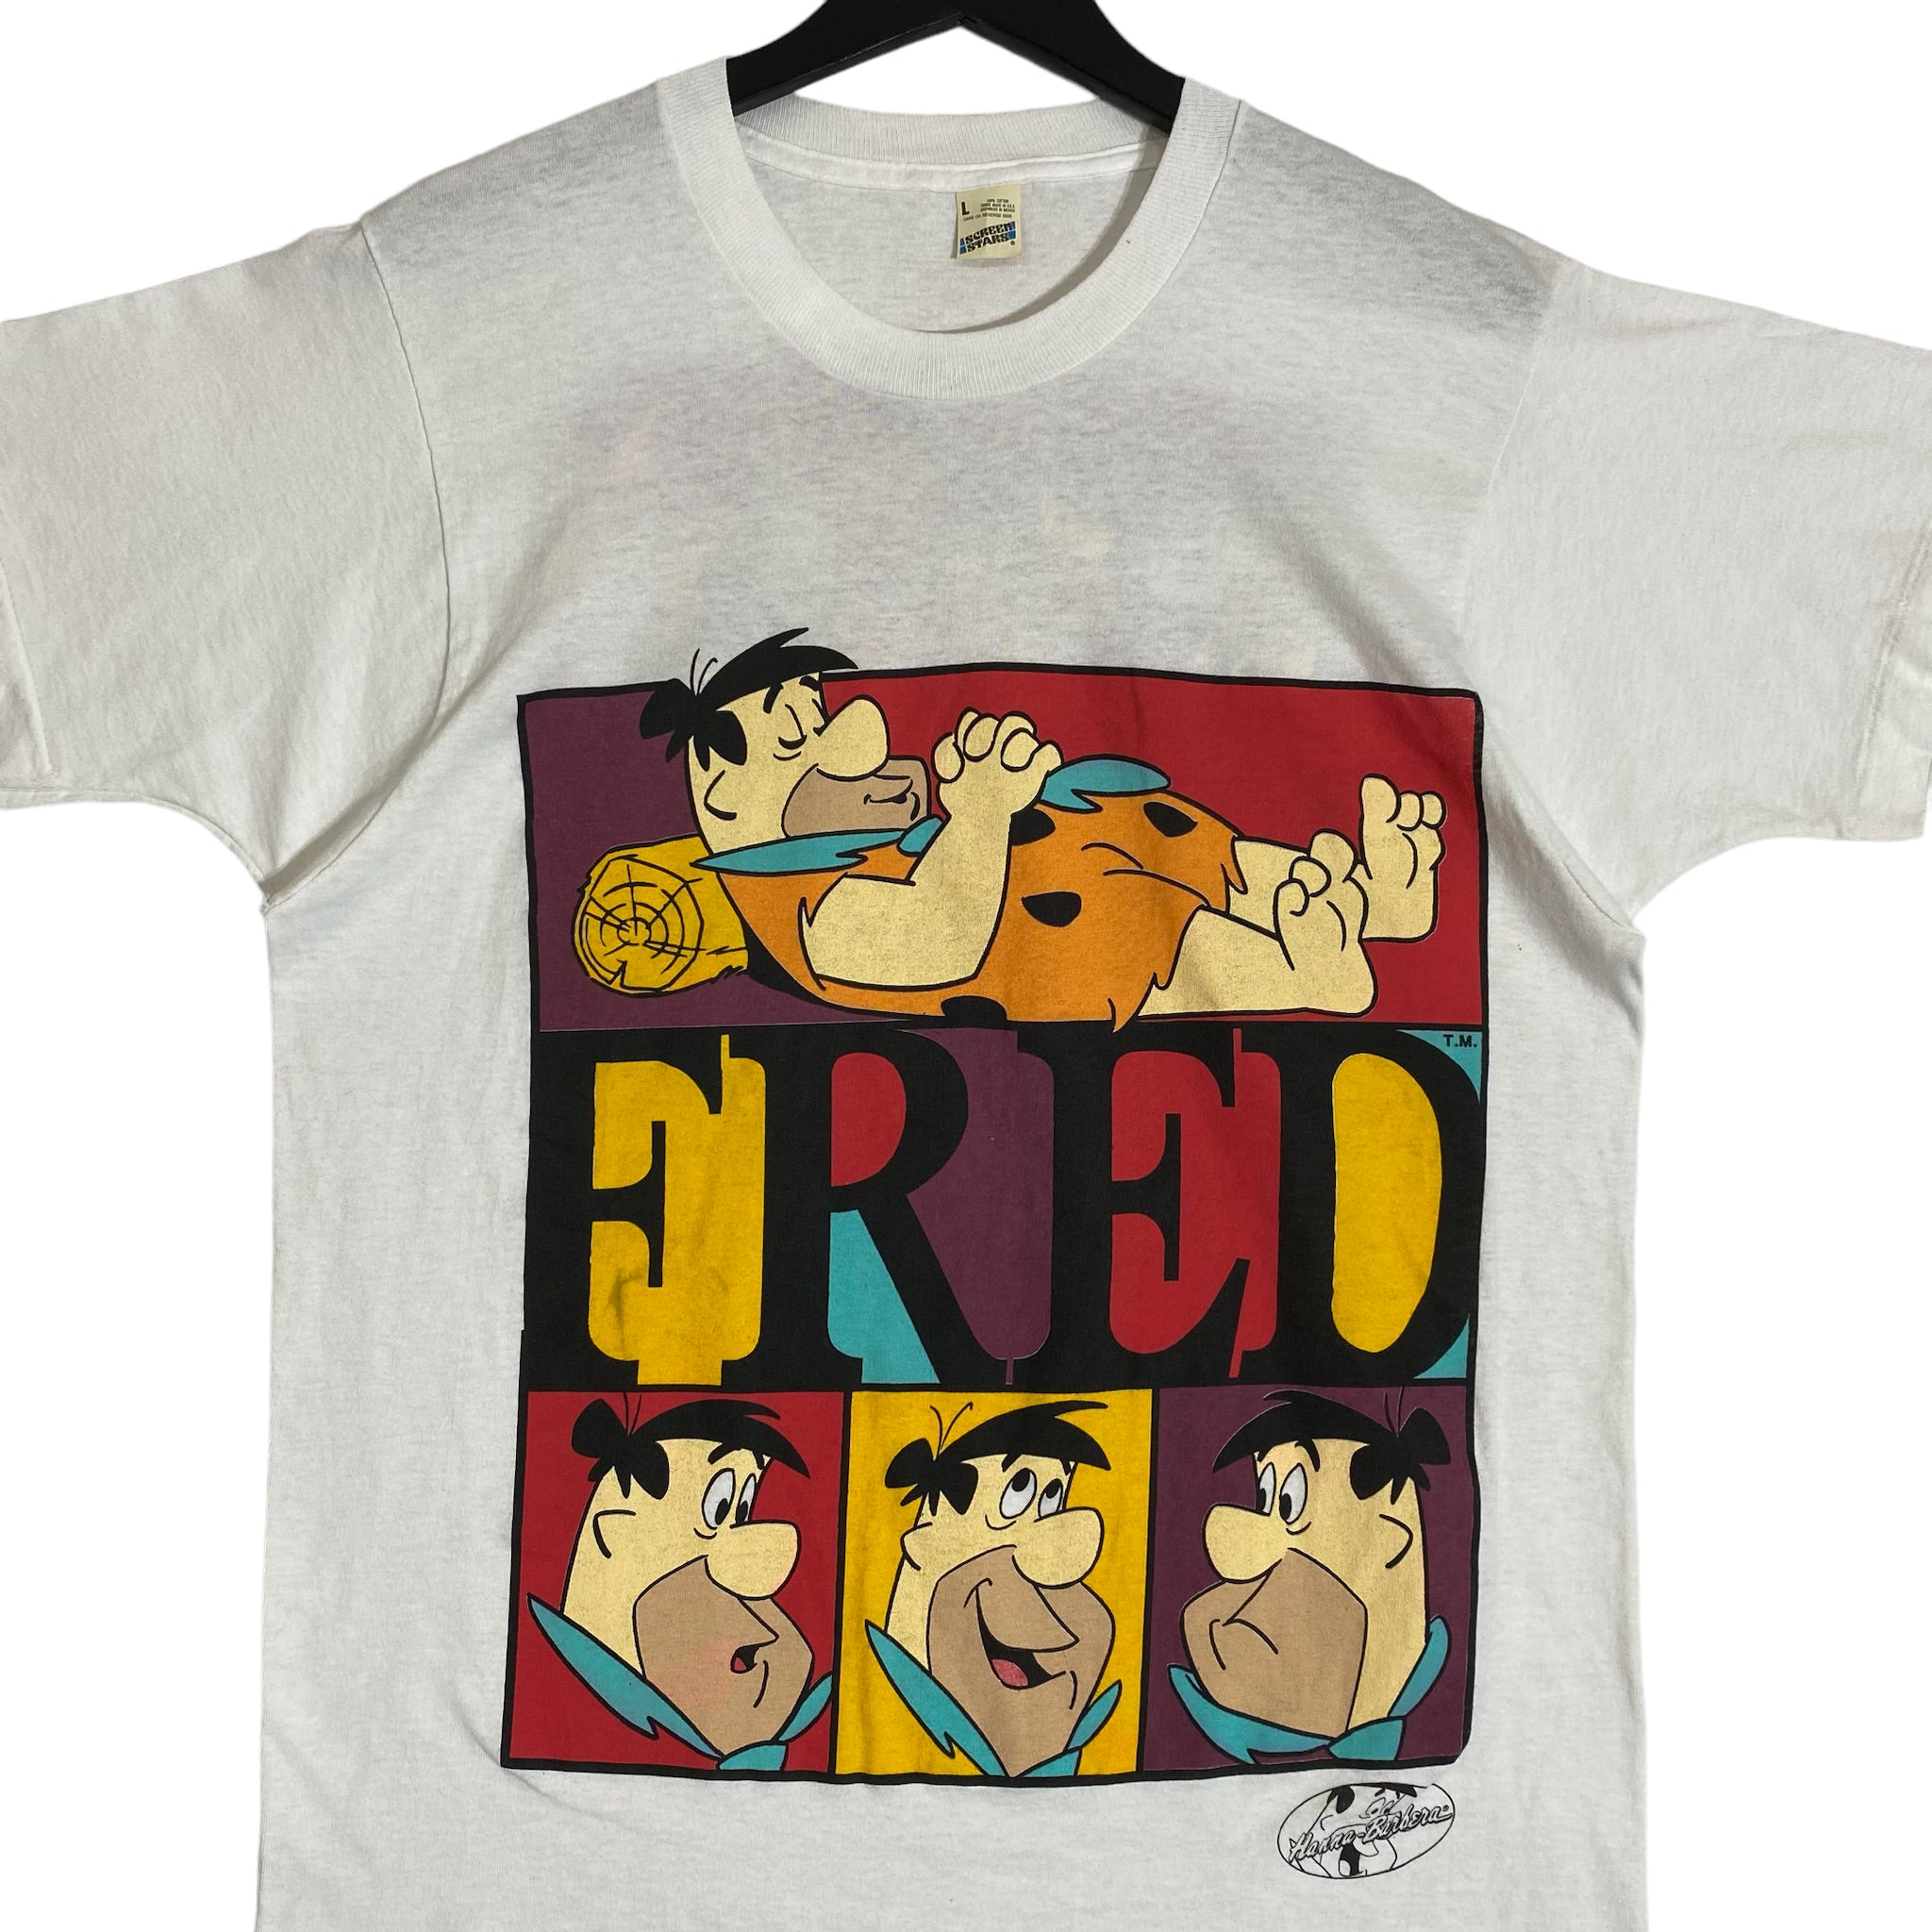 Vintage Fred Flintstone Shirt 80s